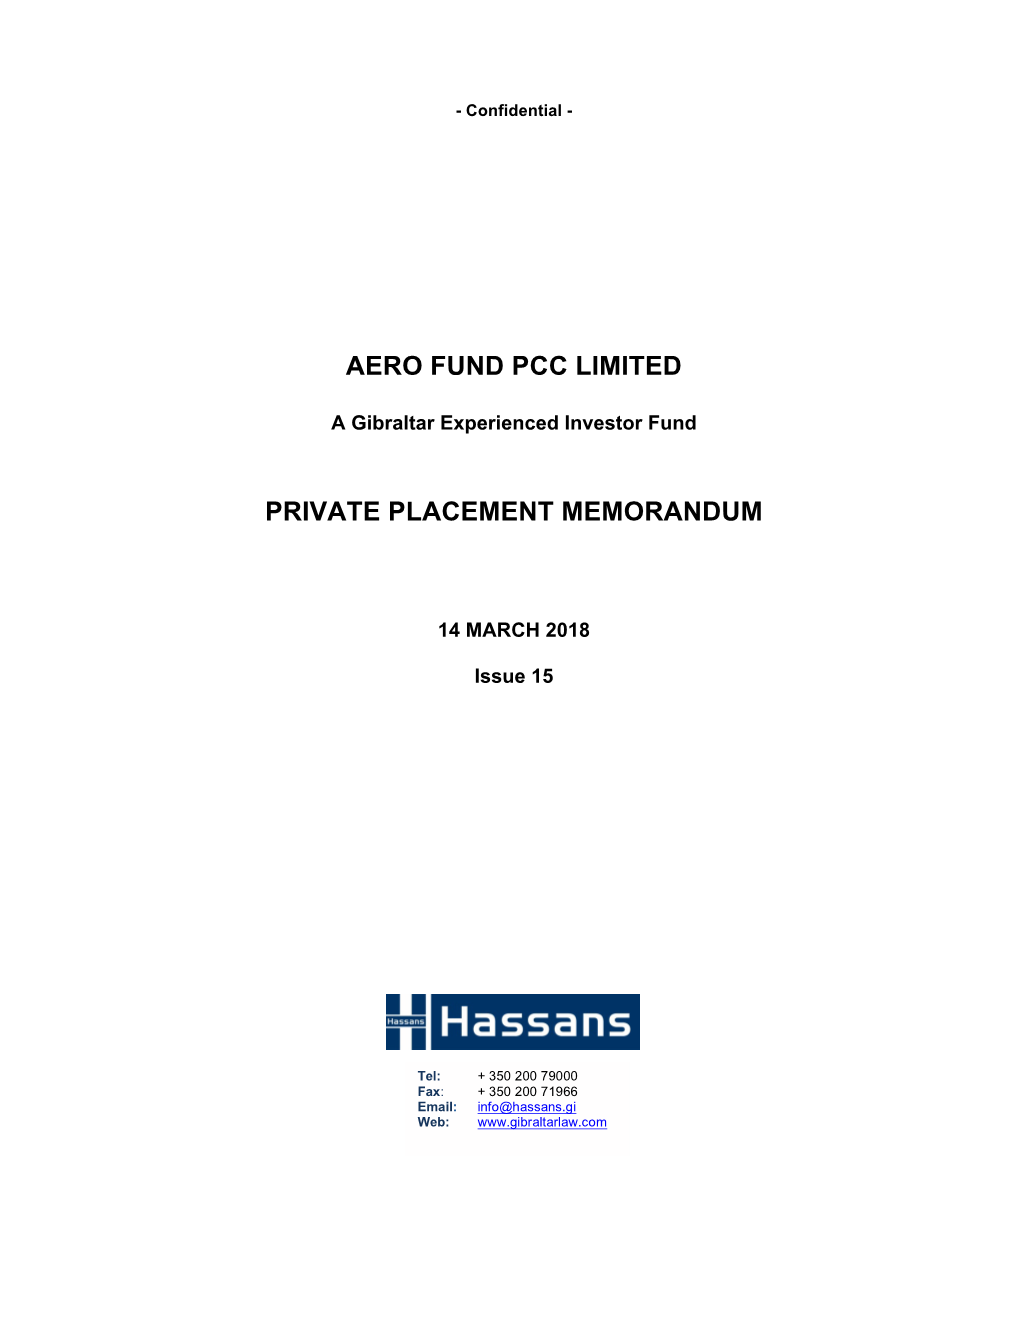 Aero Fund Pcc Limited Private Placement Memorandum